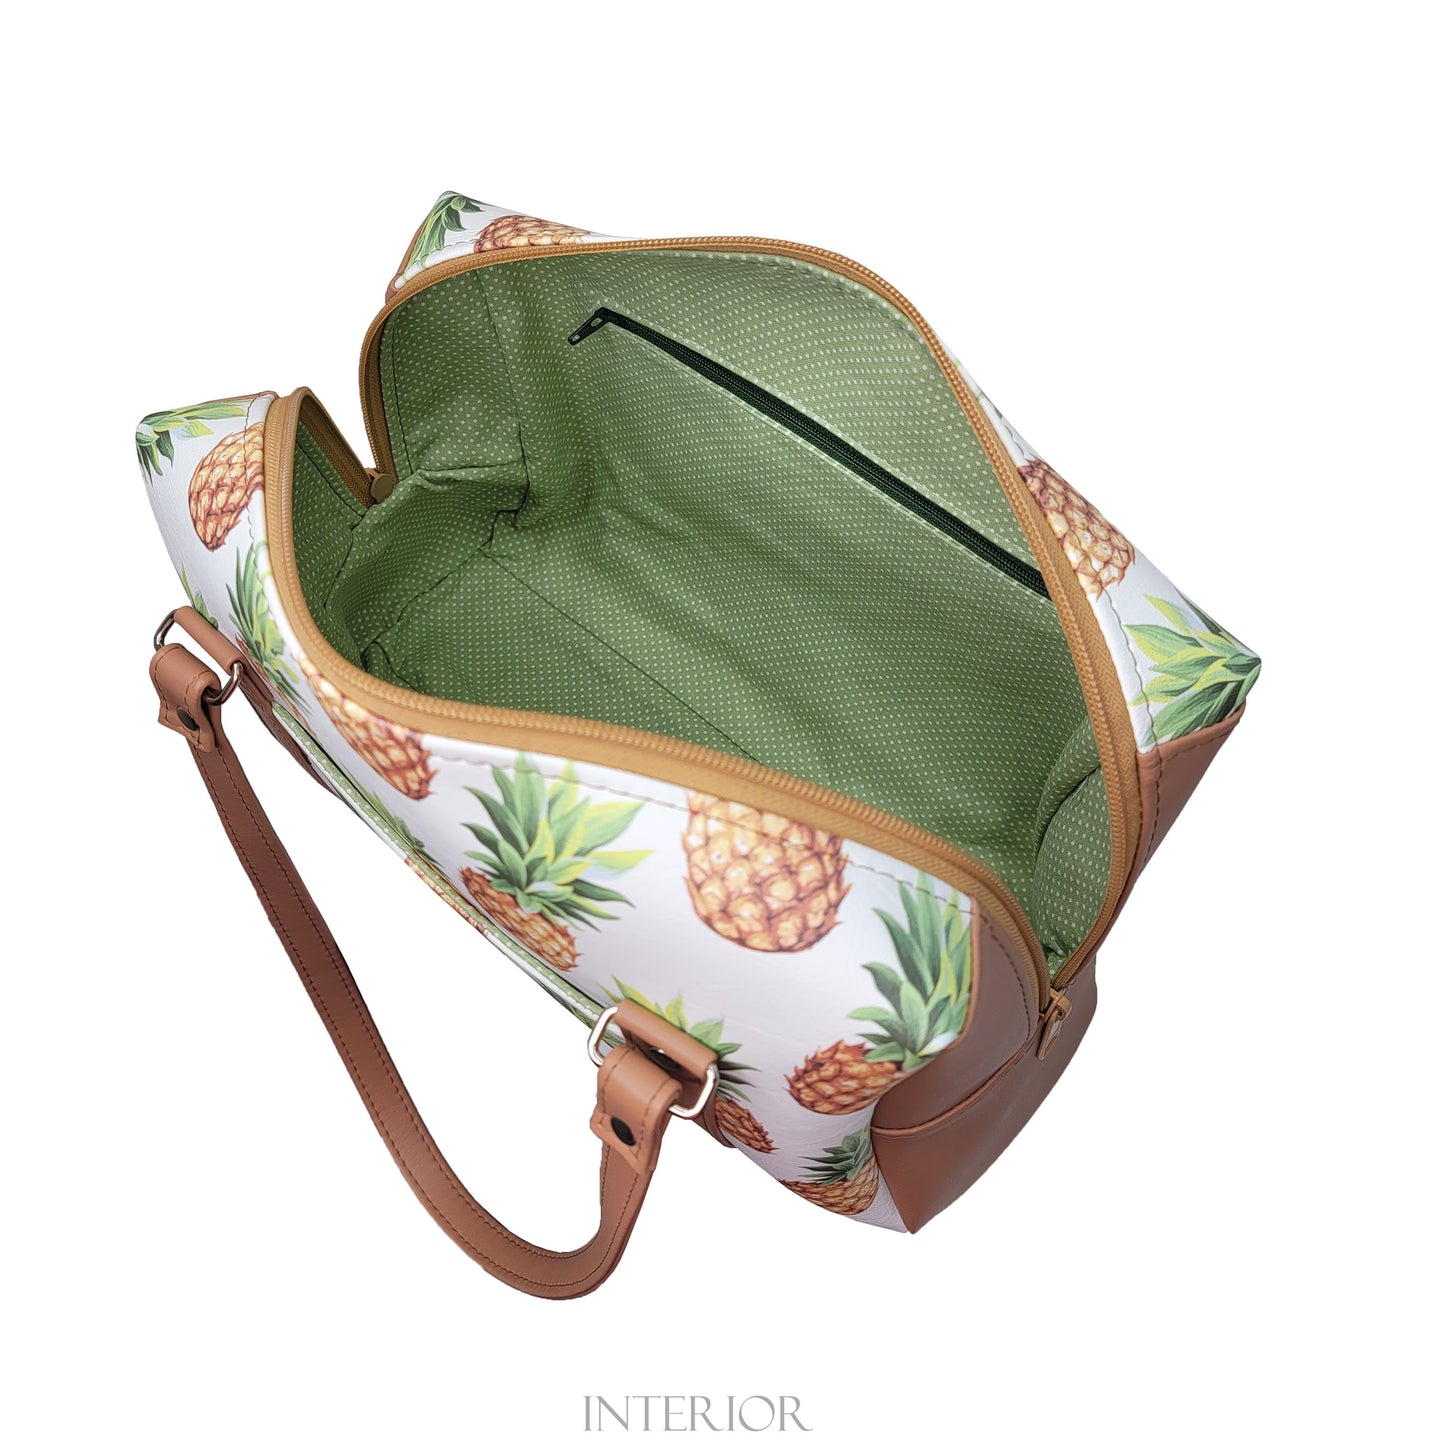 Pineapple Colette Handbag